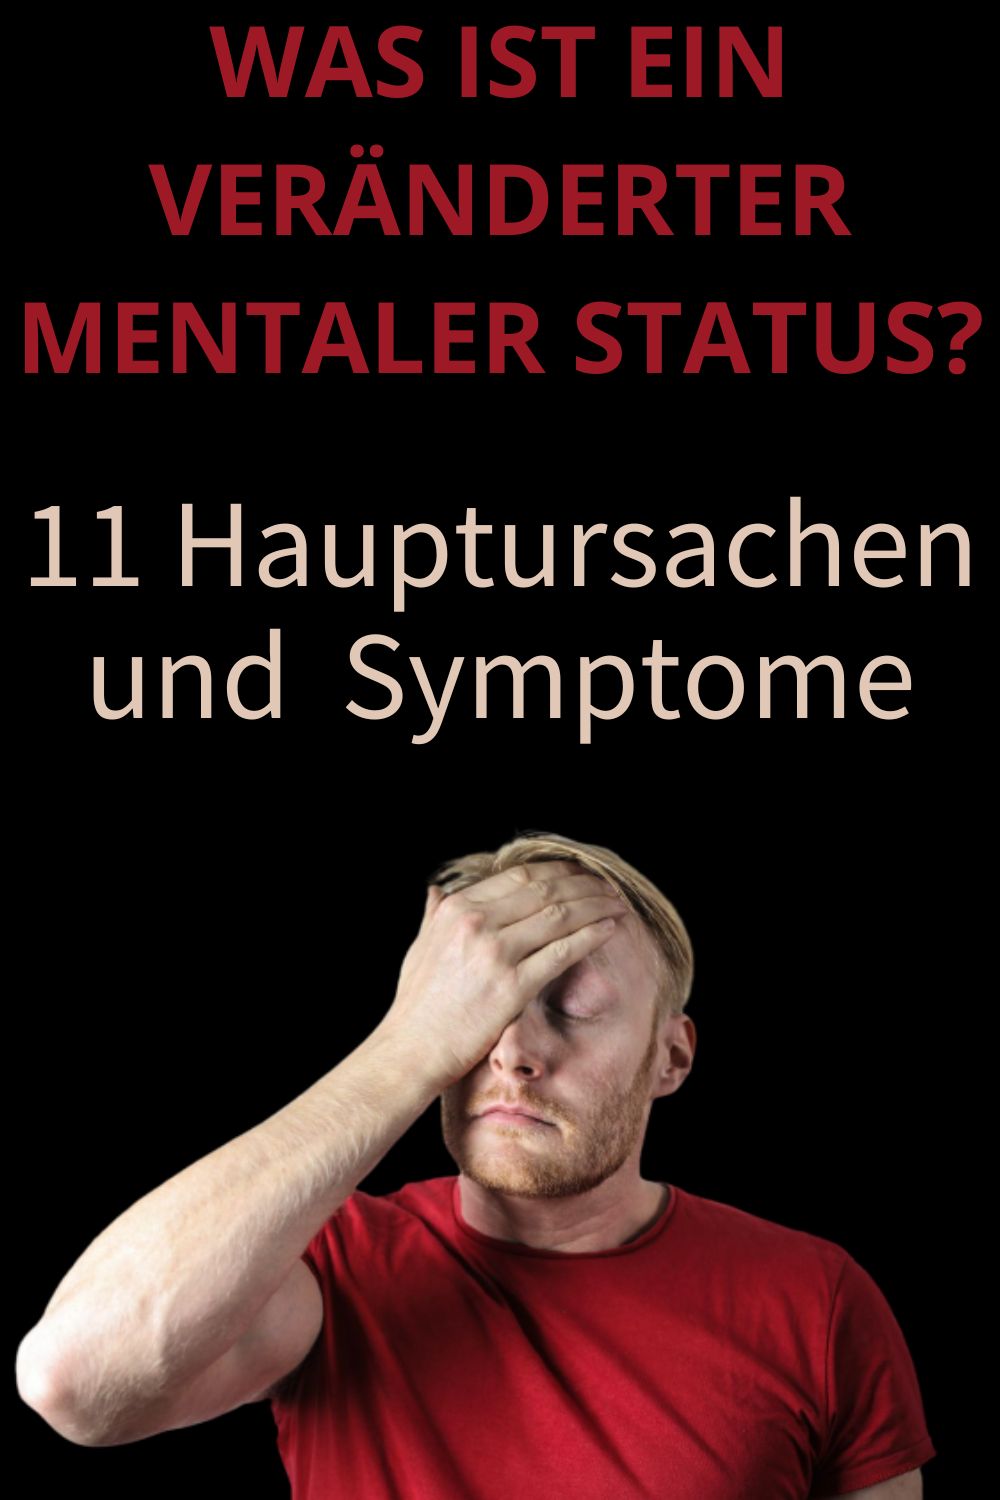 Was-ist-ein-veraenderter-mentaler-Status-11-Hauptursachen-und-Symptome